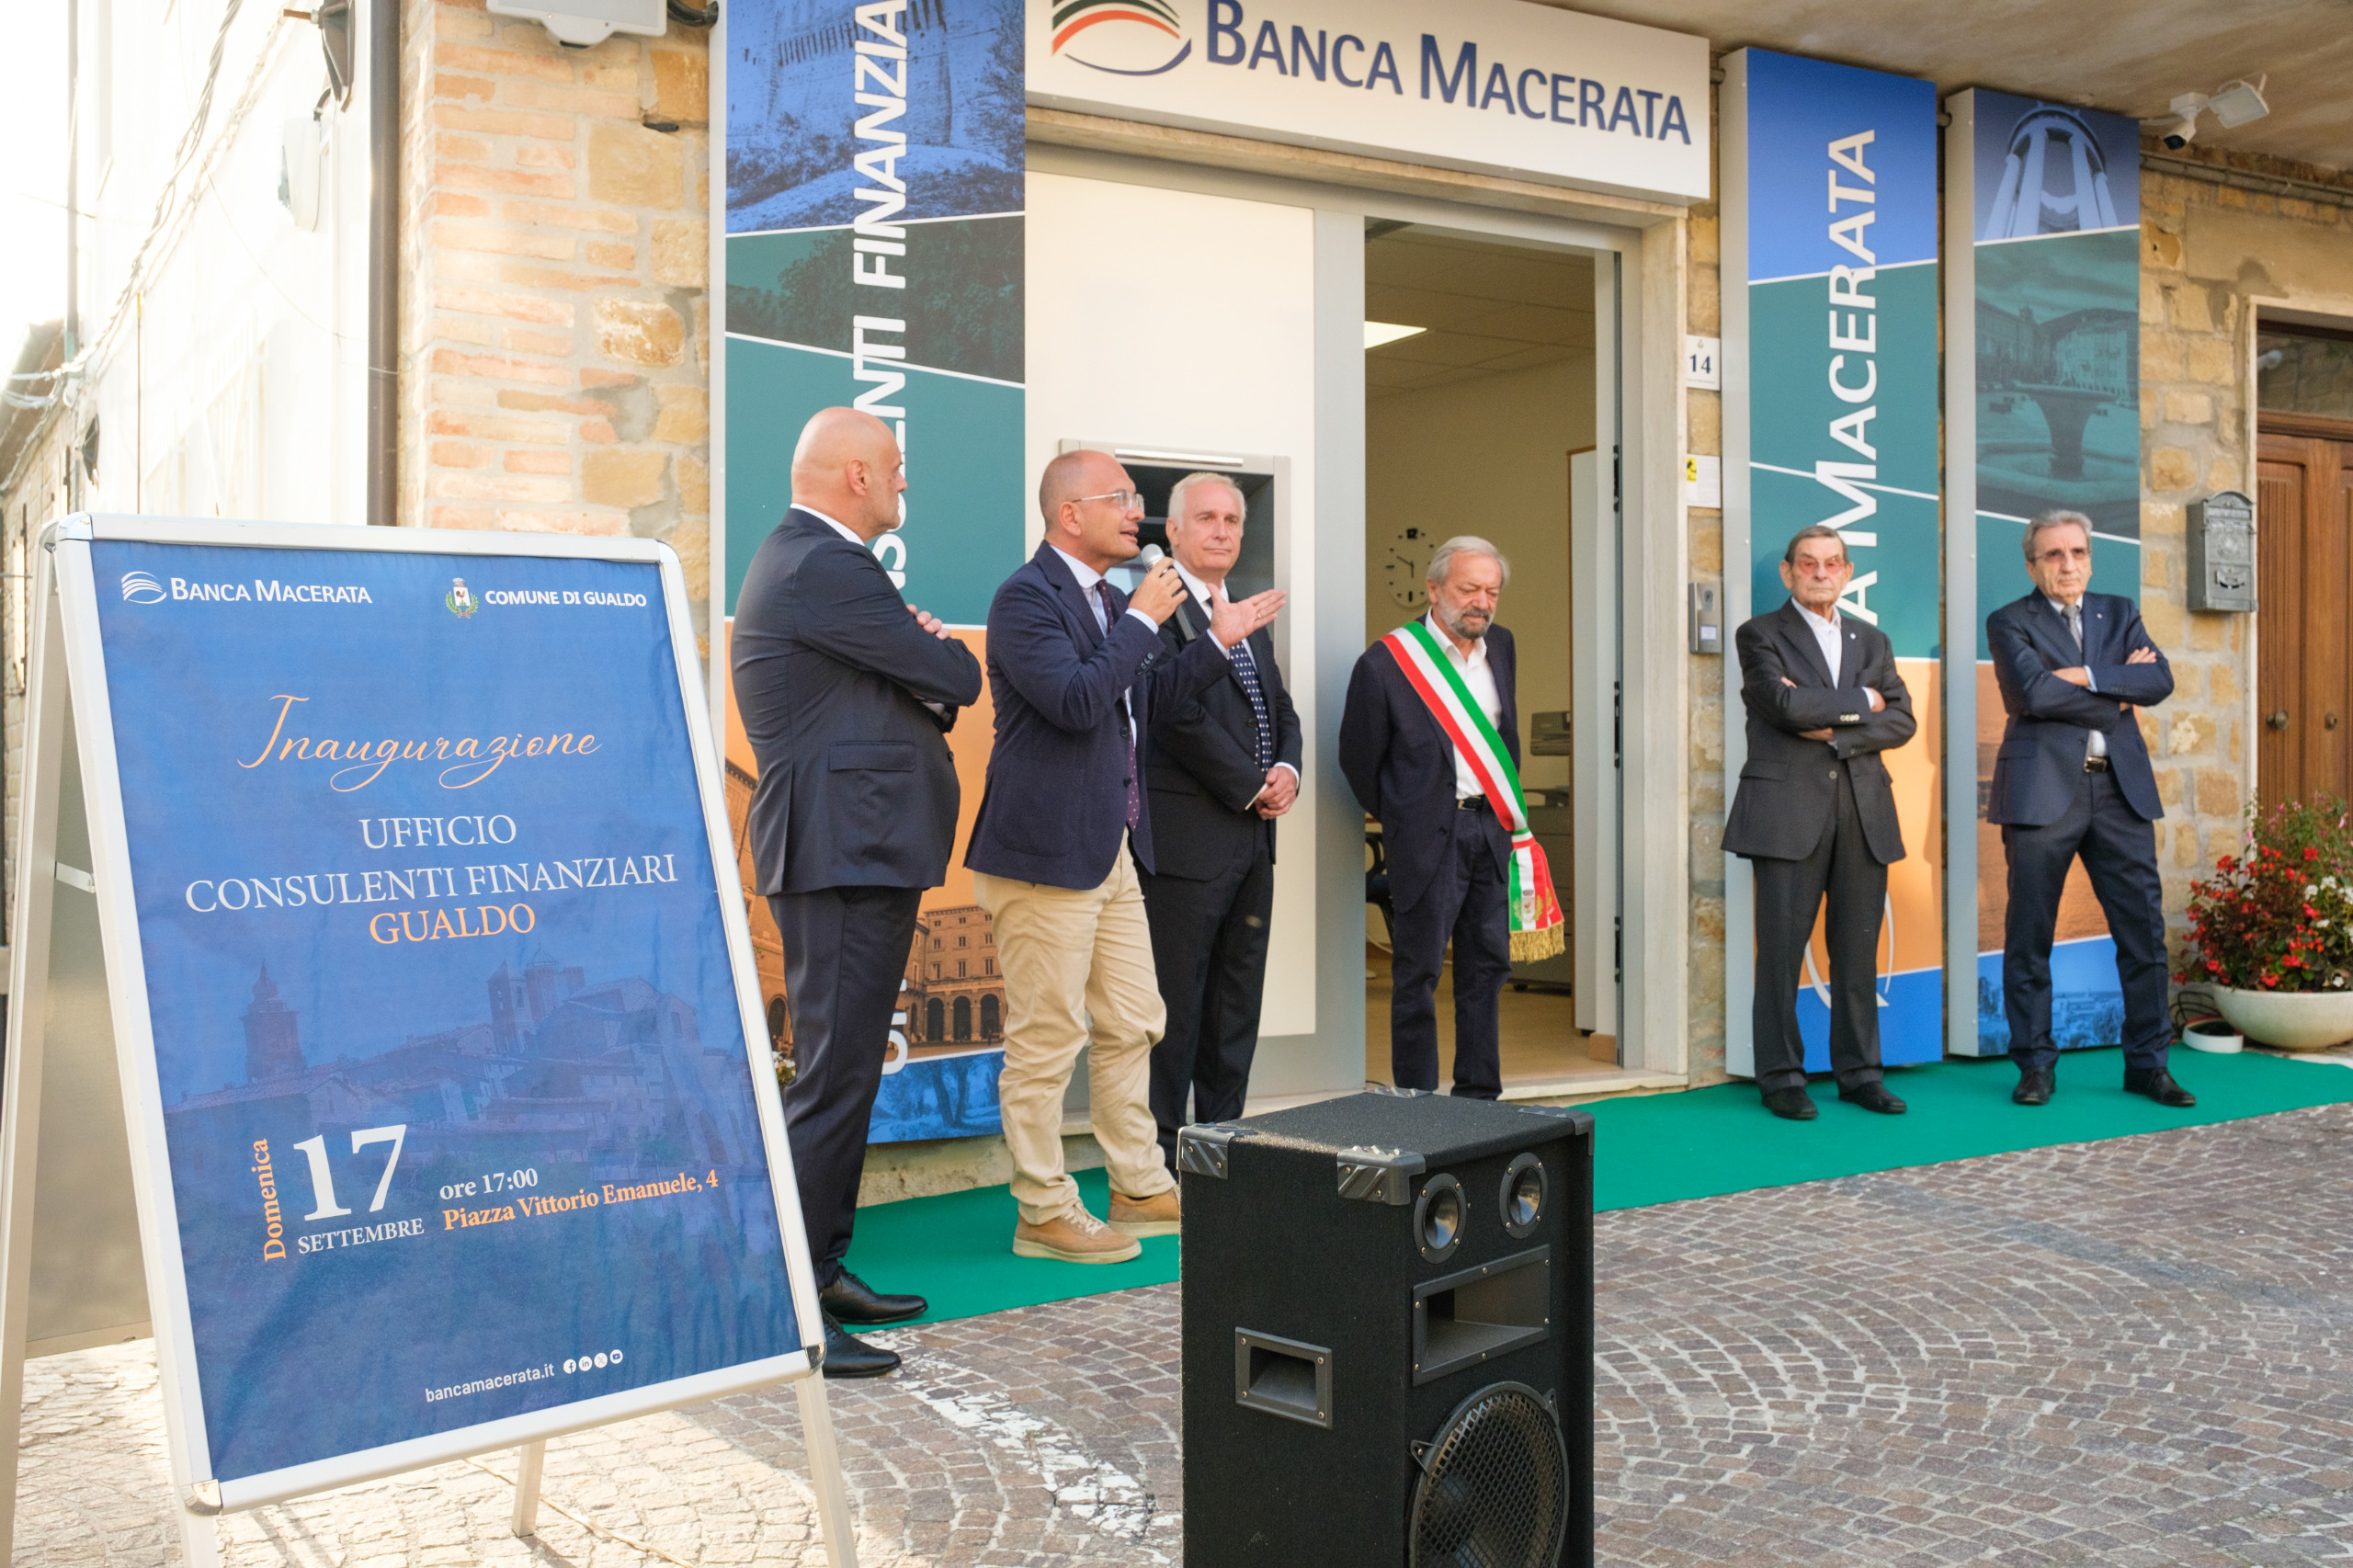 Continua lo sviluppo di Banca Macerata: nuova apertura a Gualdo | Banca Macerata 5